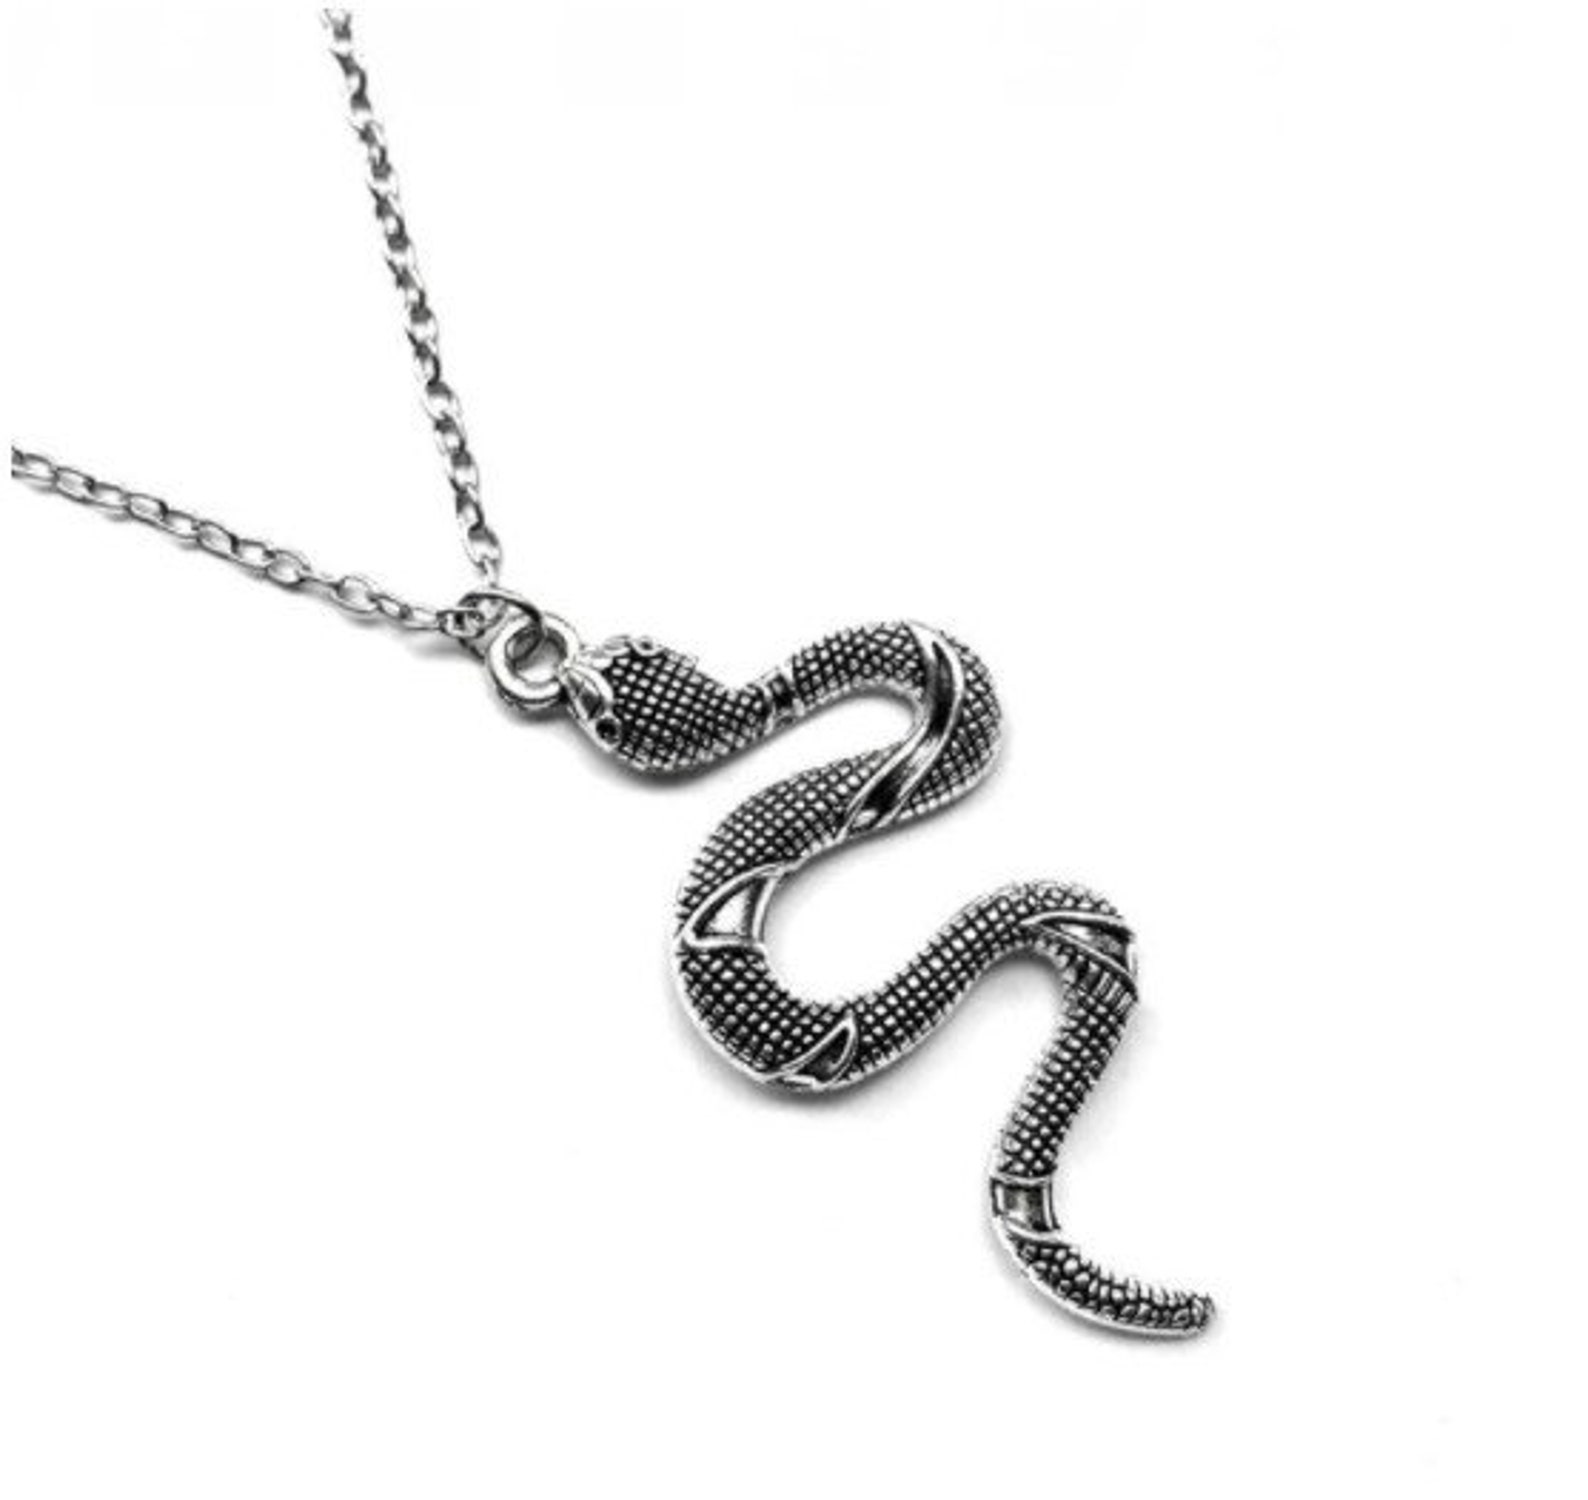 Snake necklace Serpent necklace Snake Shape Necklace Gold | Etsy